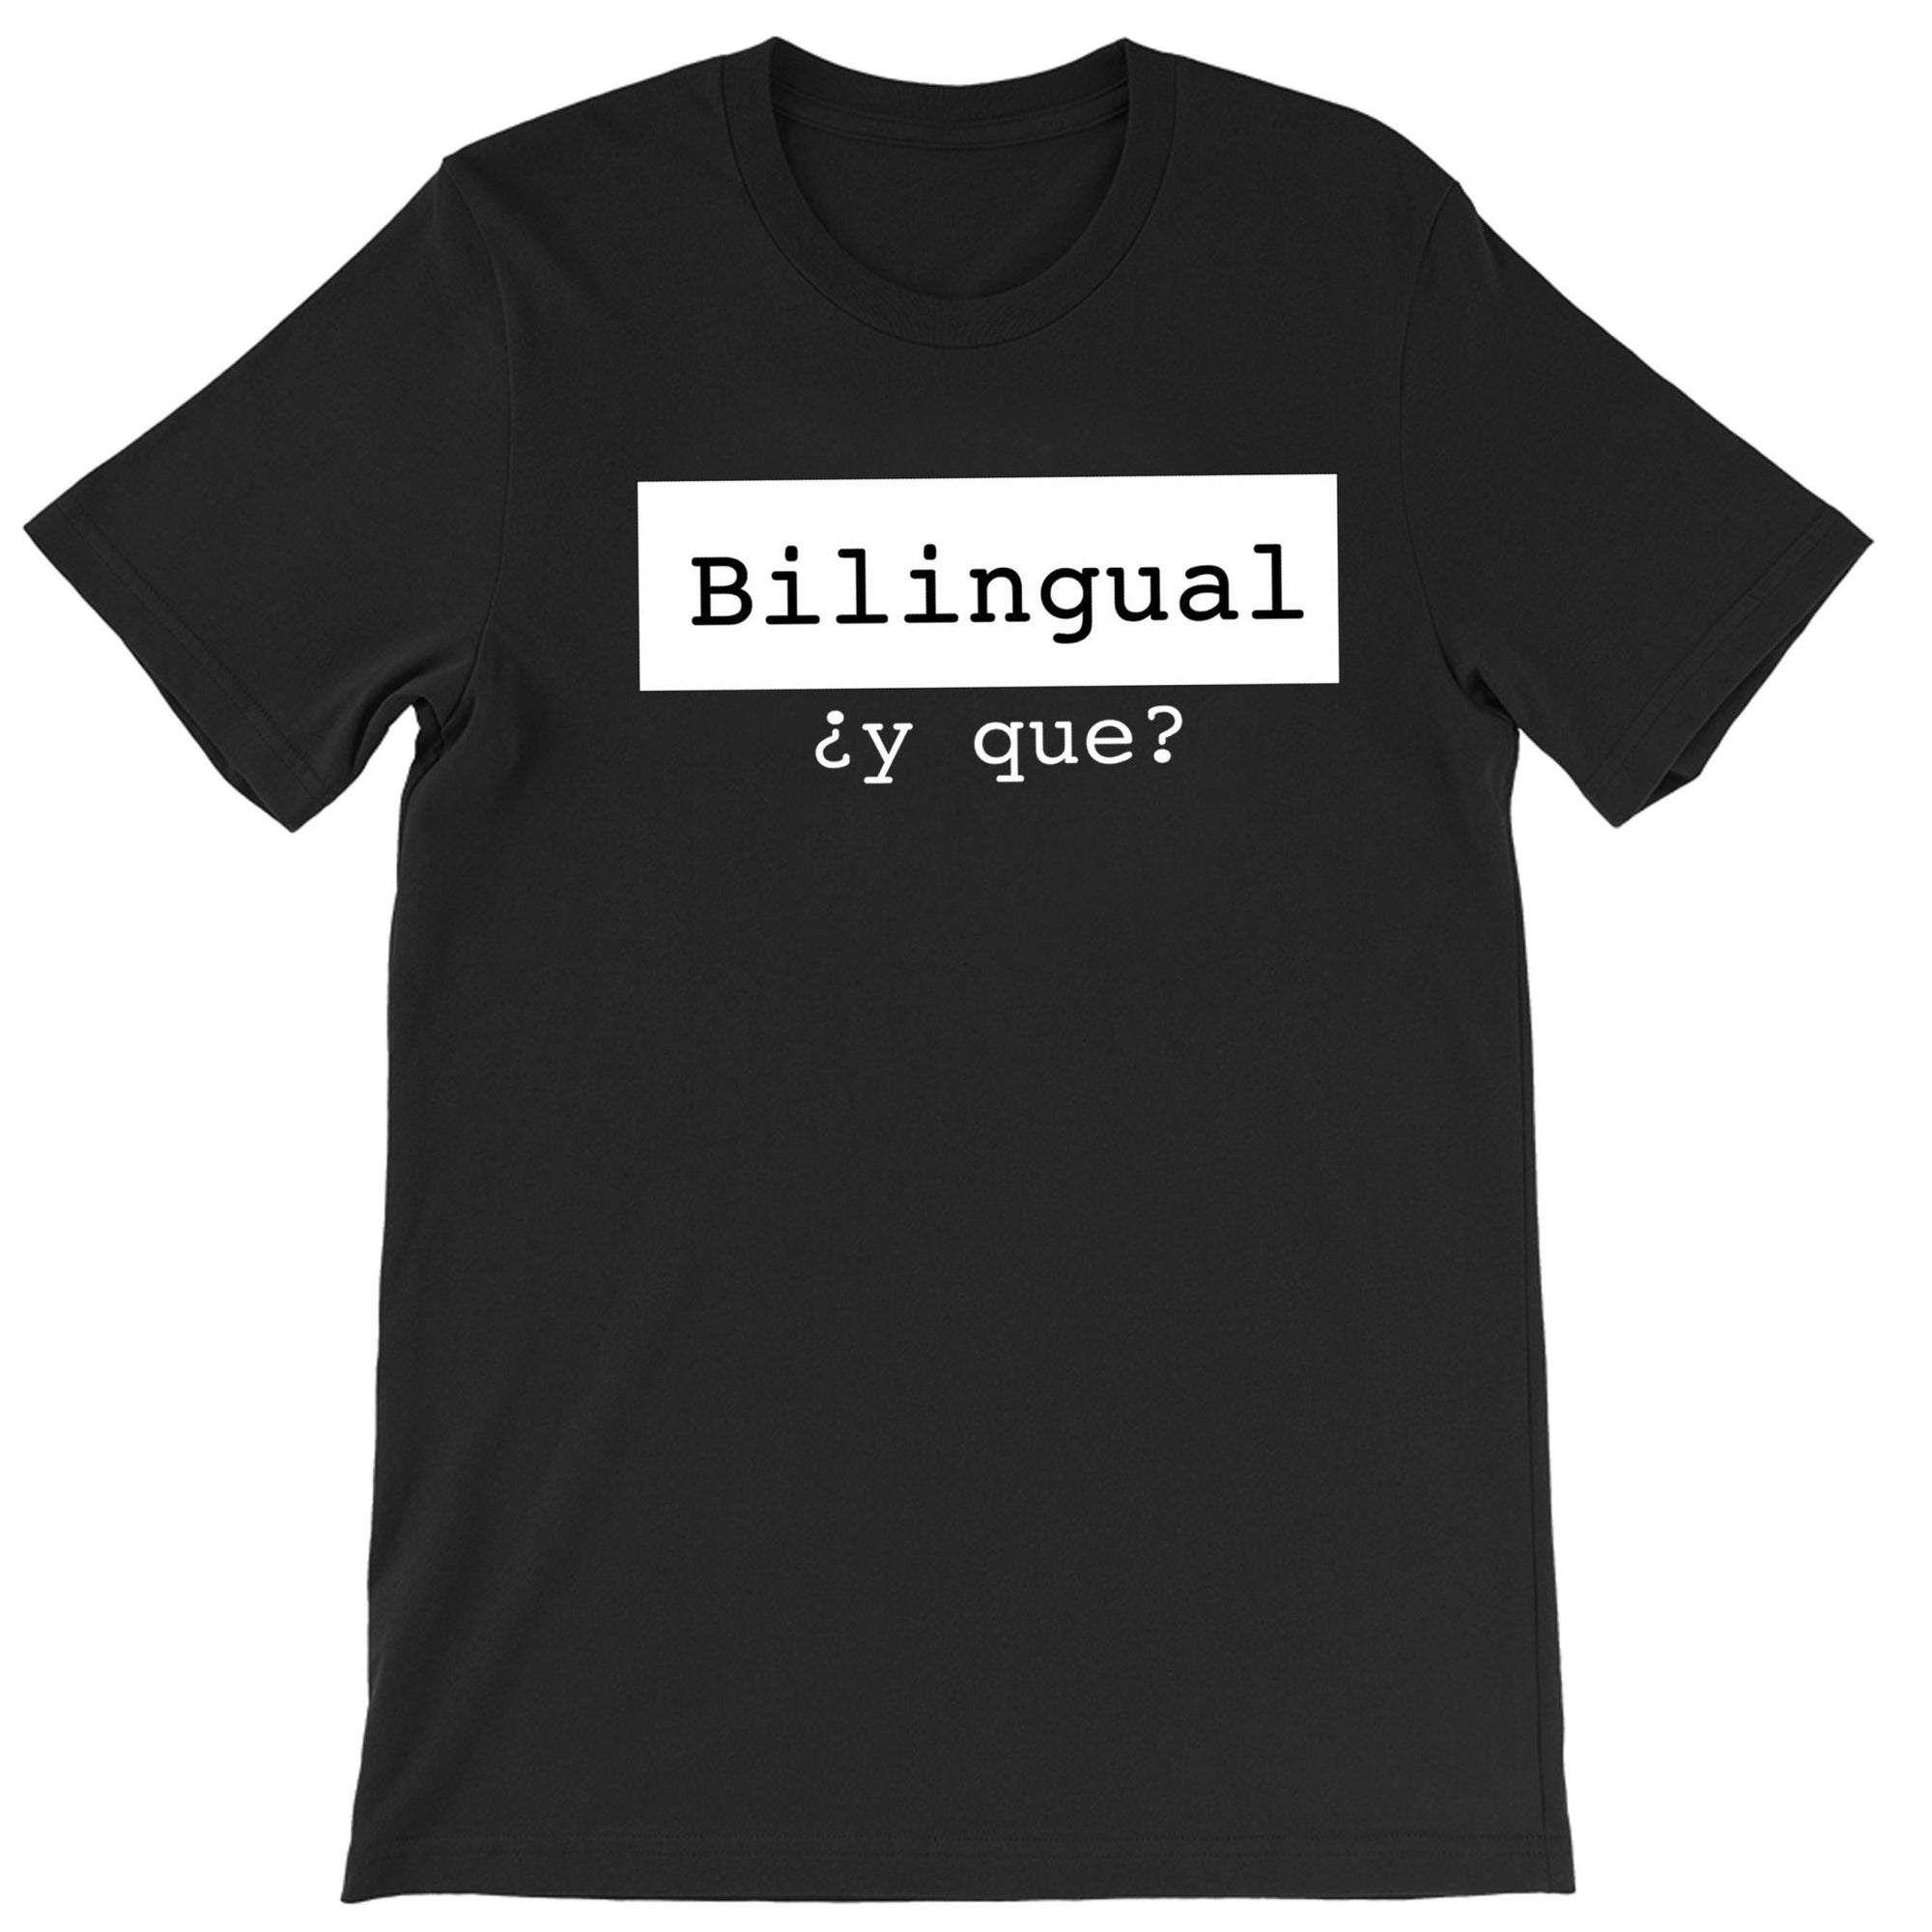 Mi LegaSi Bilingual ¿y que? Adult T-Shirt - Mi LegaSi